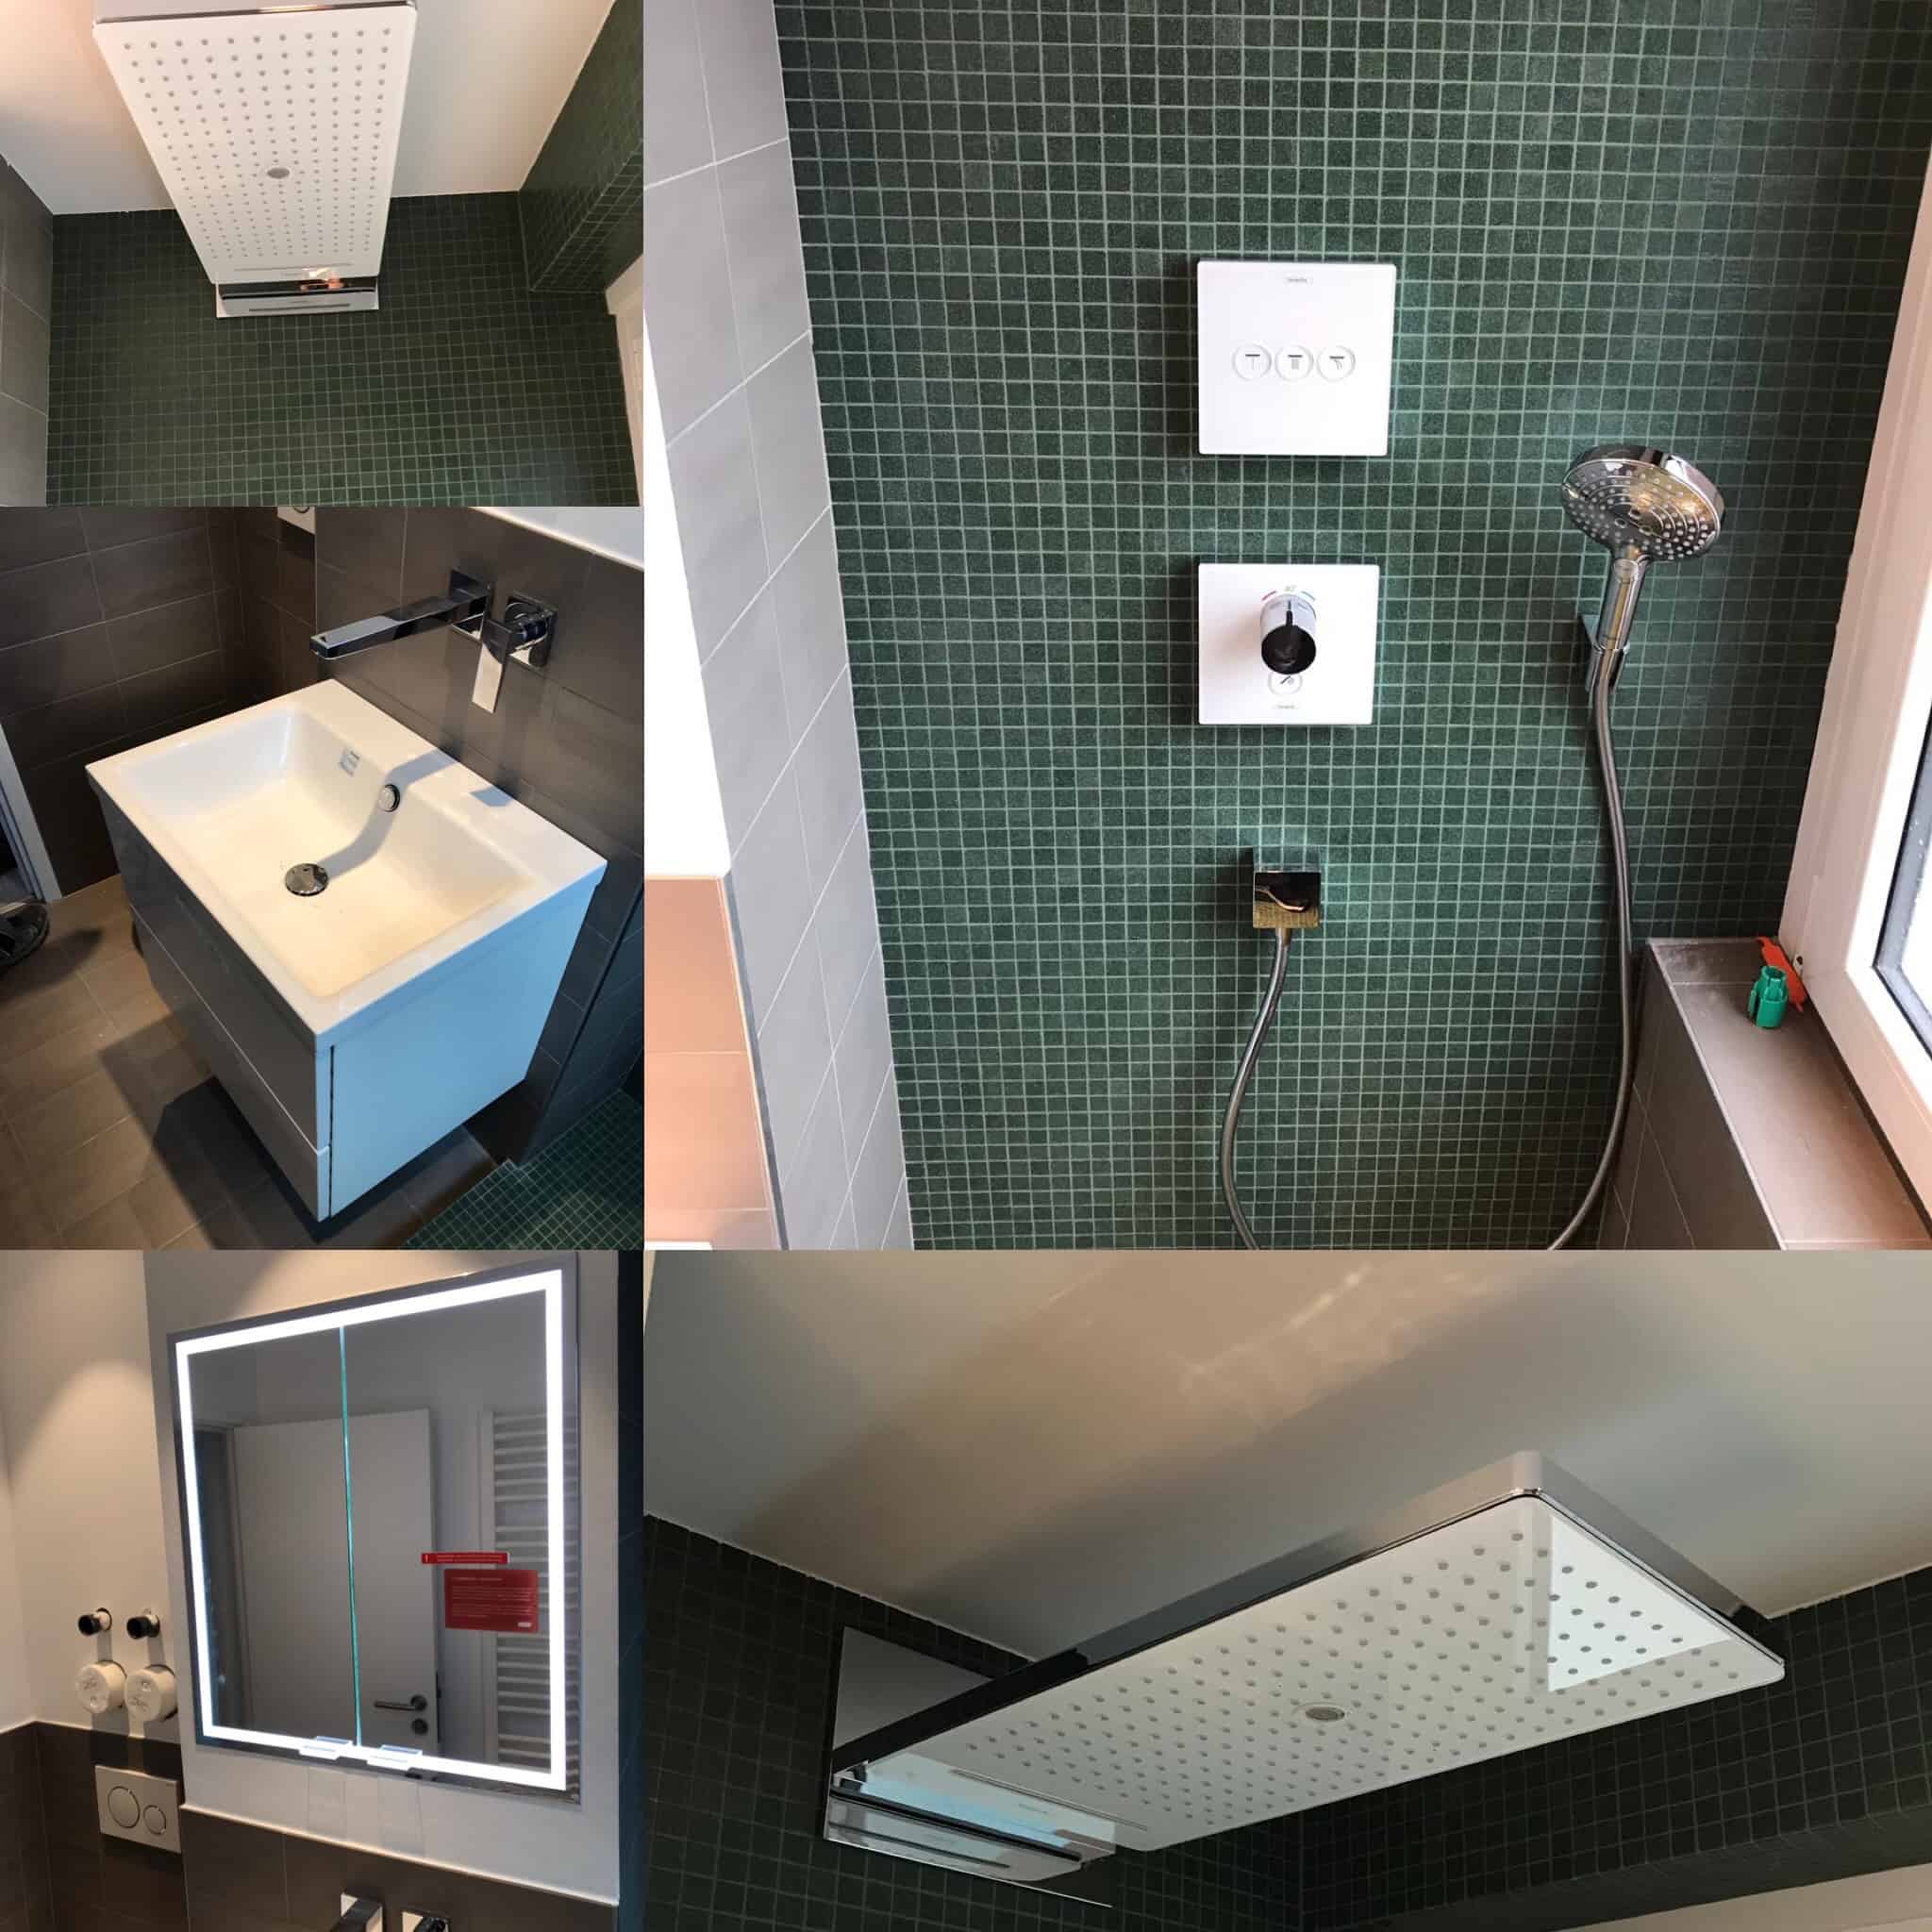 Kleines aber feines Duschbad im Nordend / Frankfurt. Durch das ersetzen der Badewanne, konnte ein großzügiger Duschbereich herstellt werden. In den bestehende Installationsschacht, konnte ein Spiegelschrank integriert werden und ein platzsparenden Waschplatz.